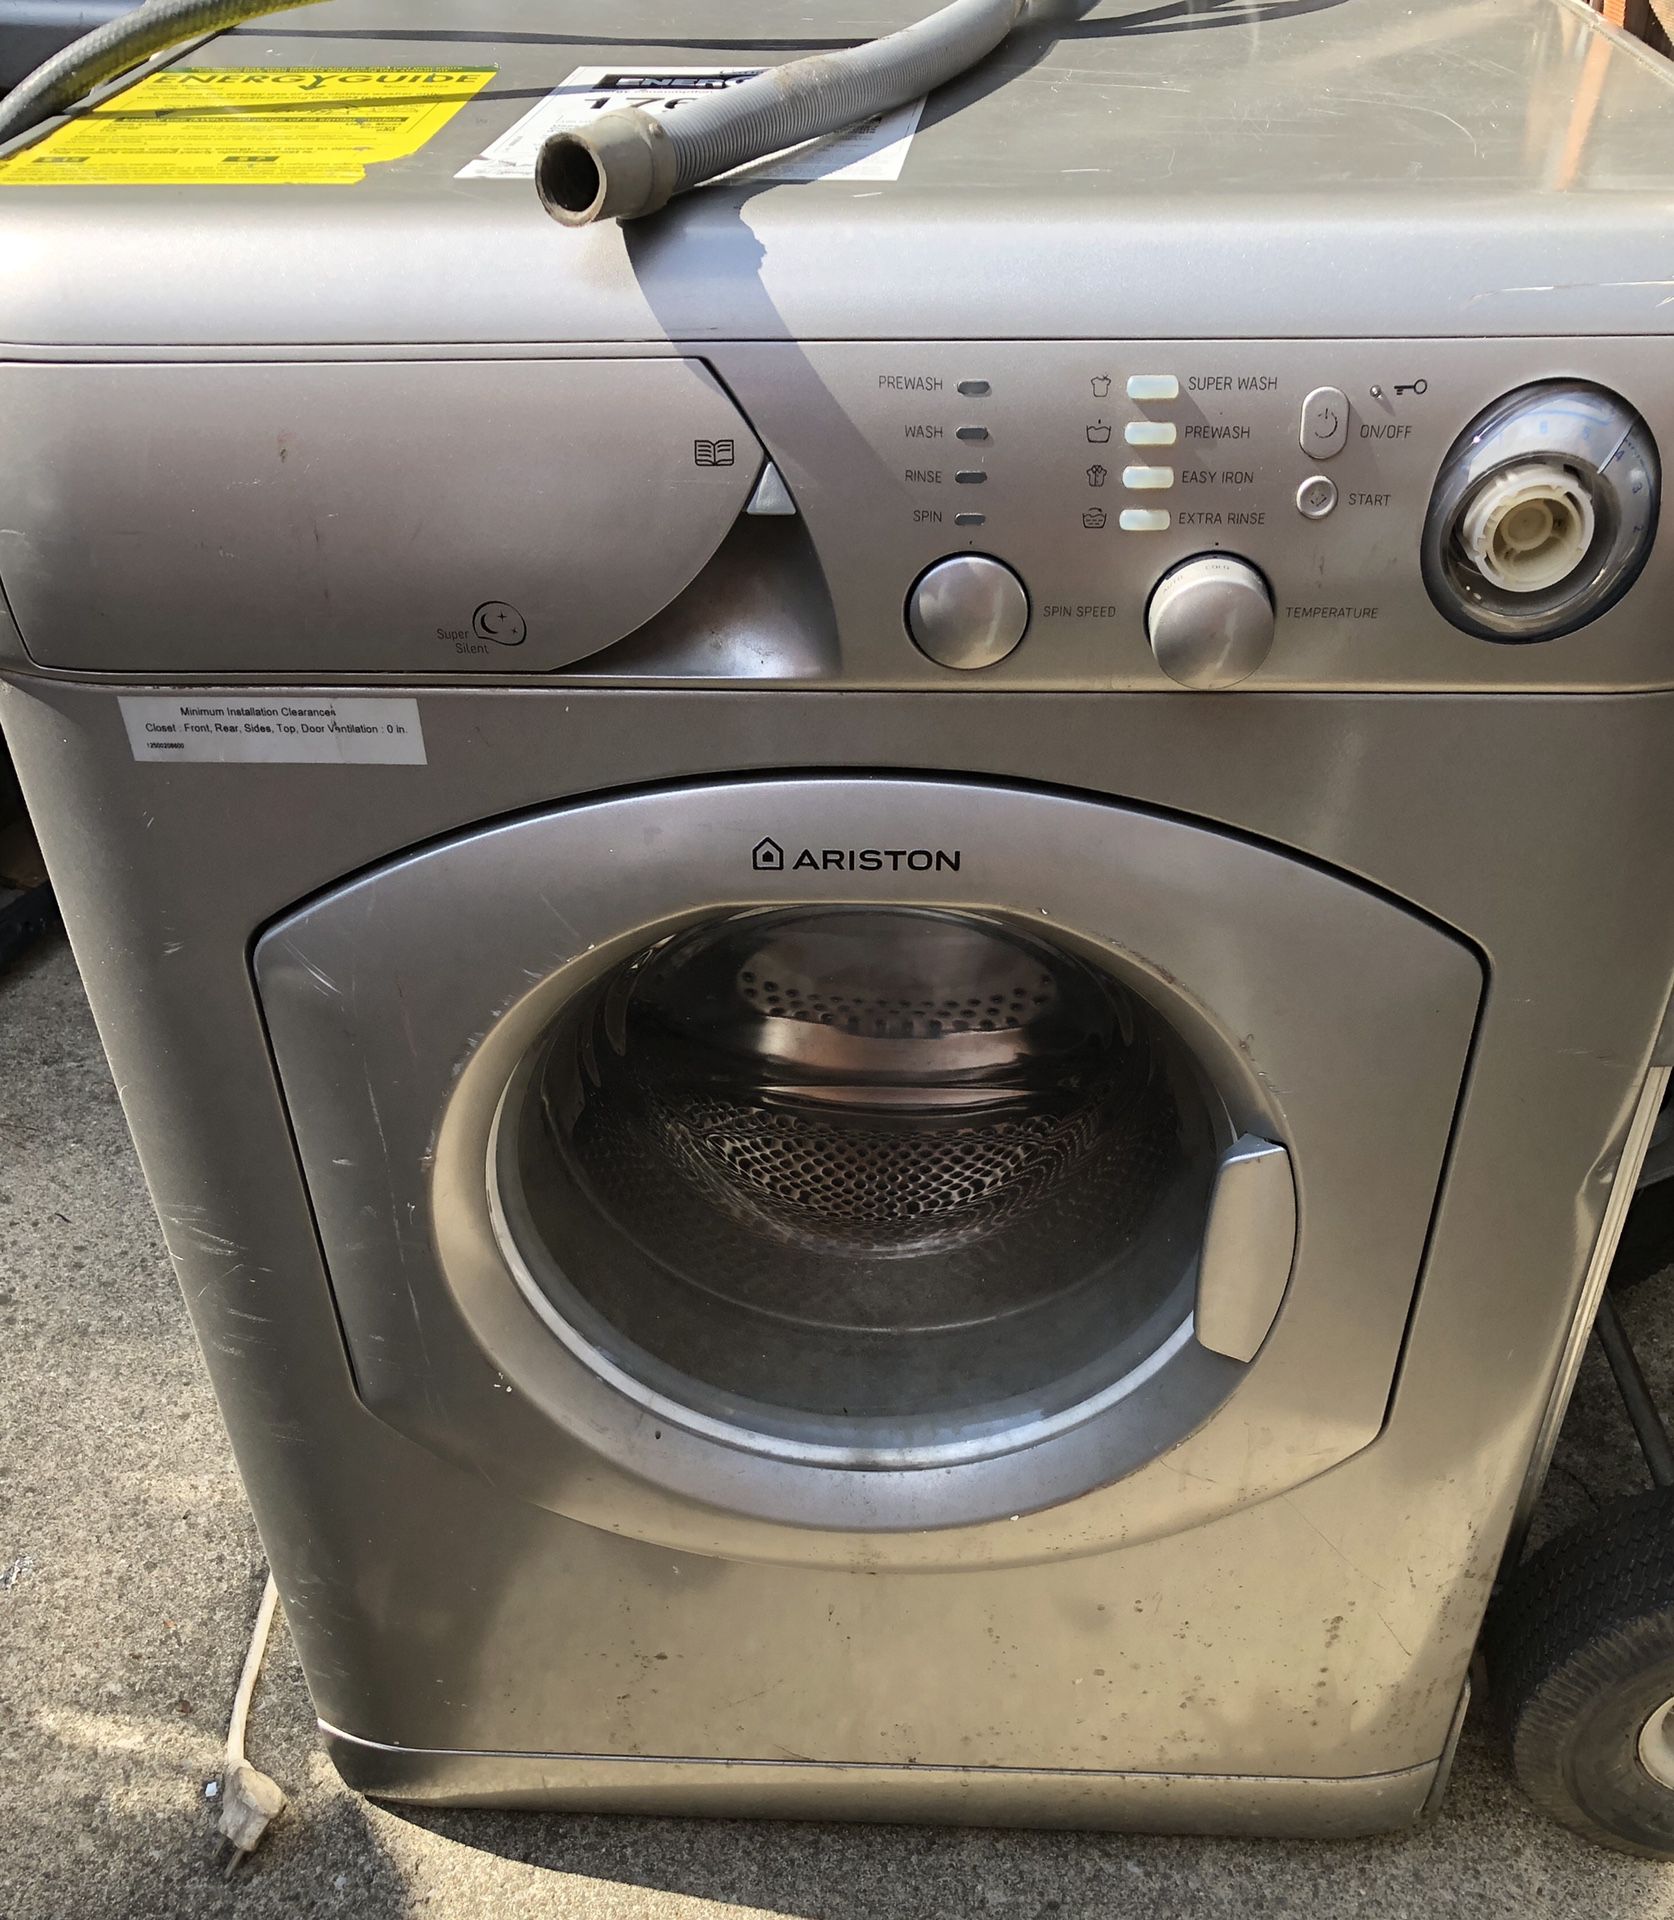 Ariston front loader washer & Dryer stackable Set